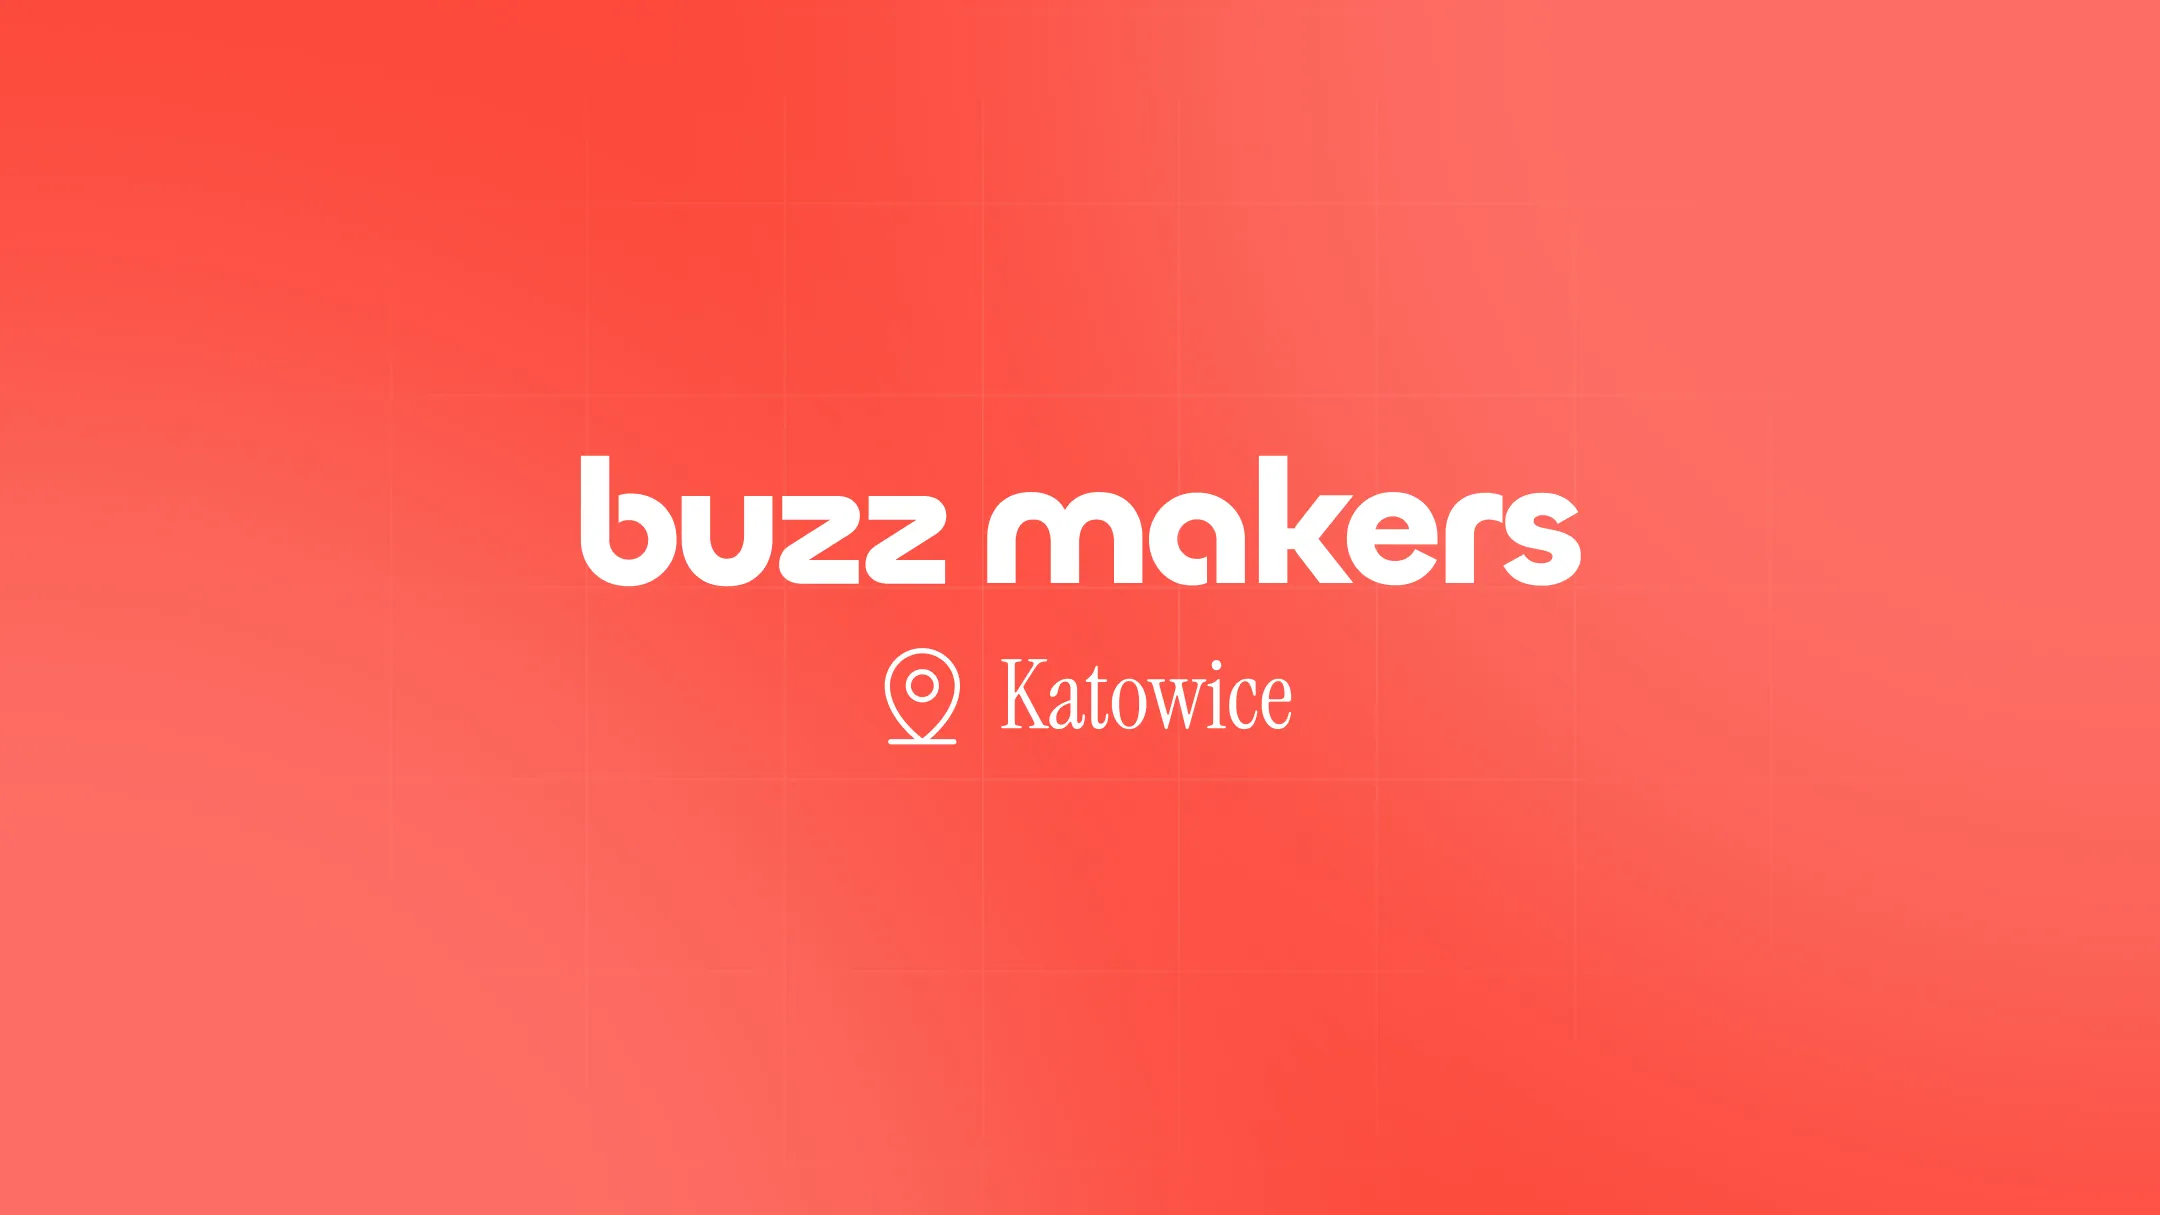 Buzz Makers - agencja marketingowa Katowice. Stworzymy prawdziwy buzz wokół Twojej marki!